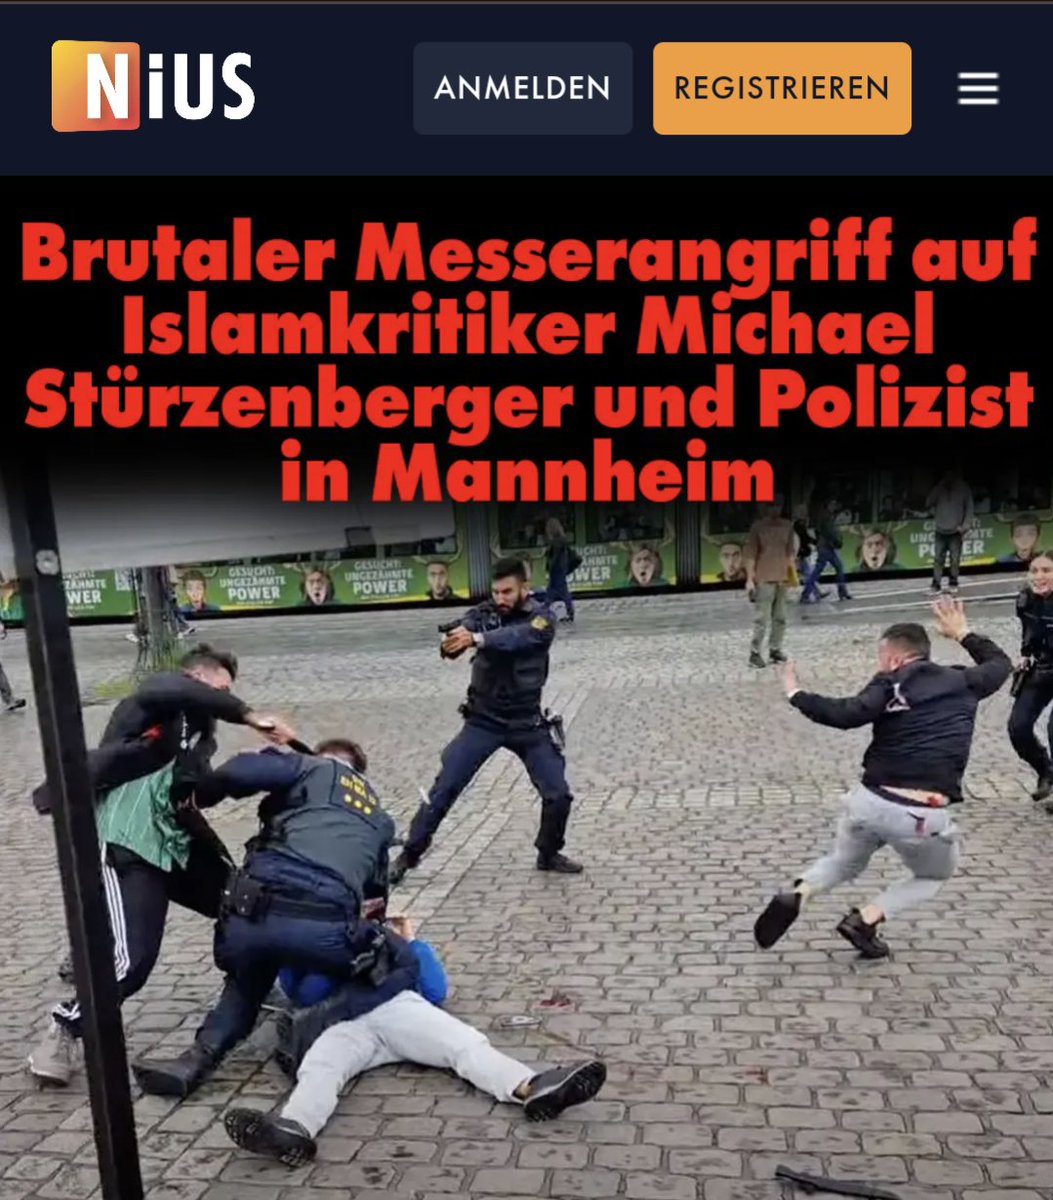 BREAKING NIUS: Messerangriff auf Islam-Kritiker Michael Stürzenberger und mutigen Polizisten. nius.de/common/brutale…